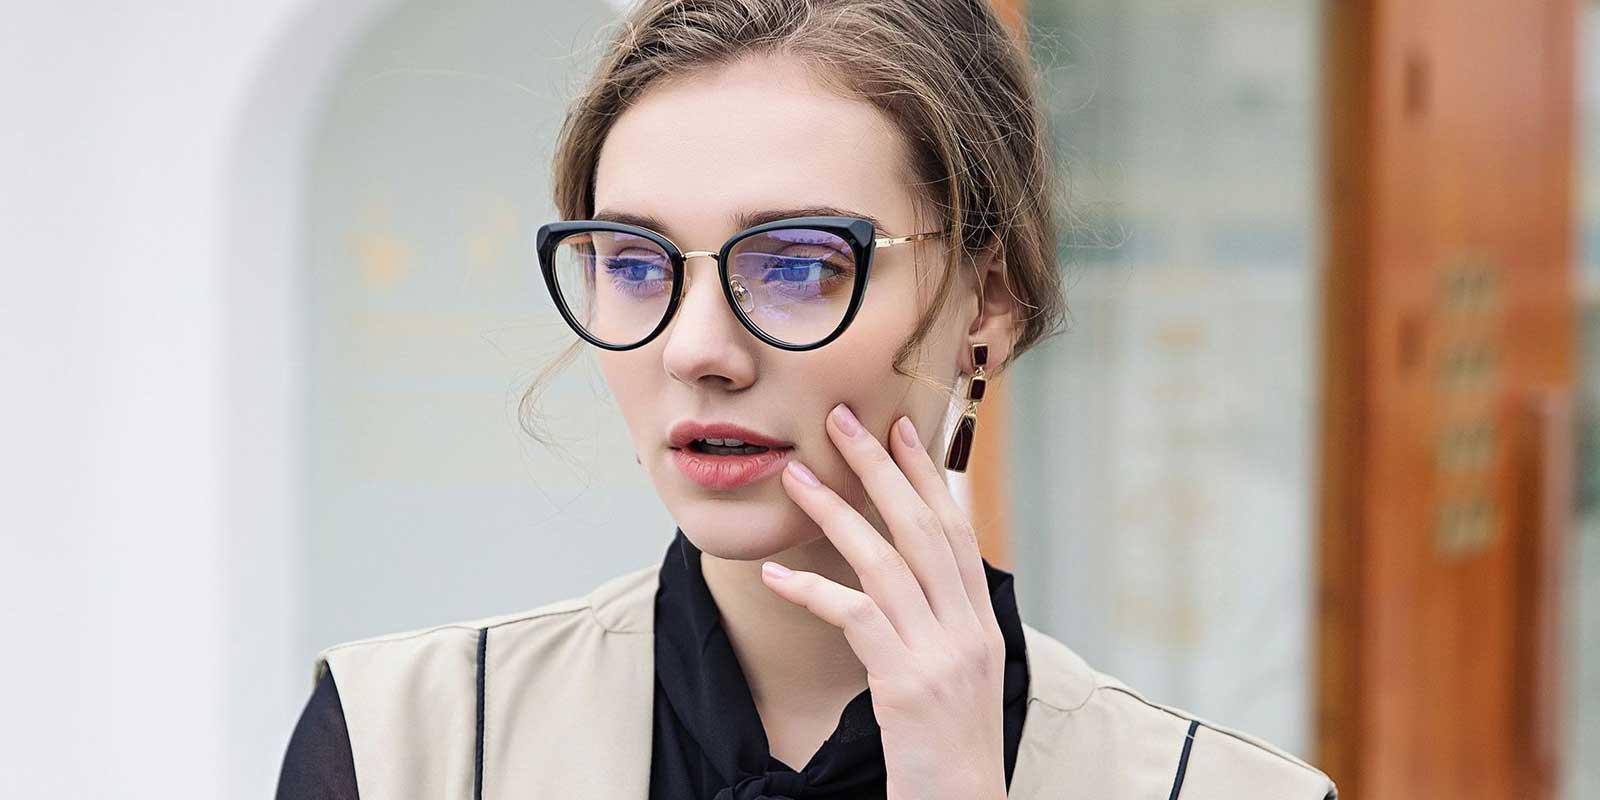 Hortensia-Black-Cat-TR-Eyeglasses-detail